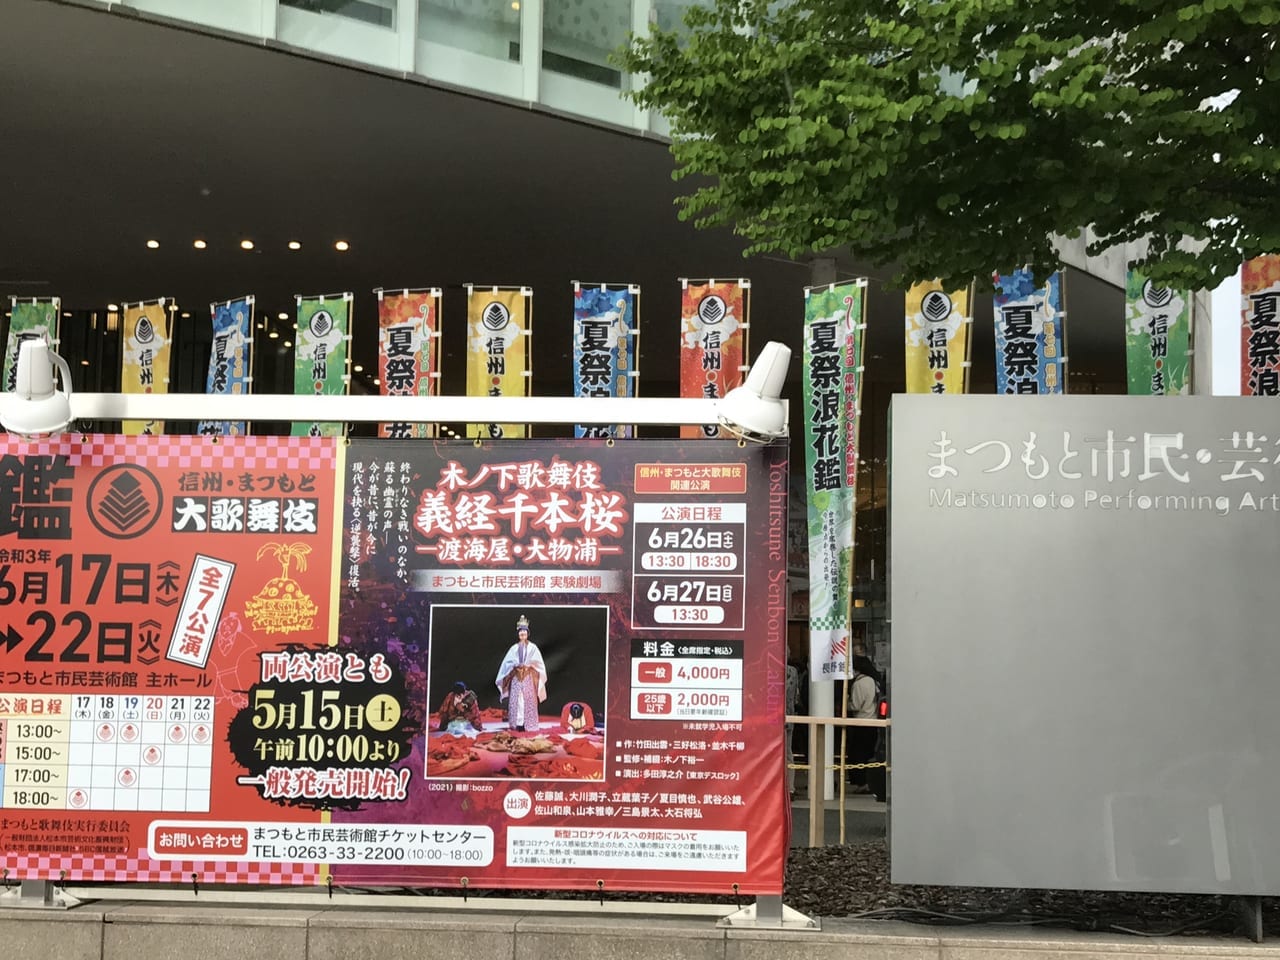 松本市大歌舞伎